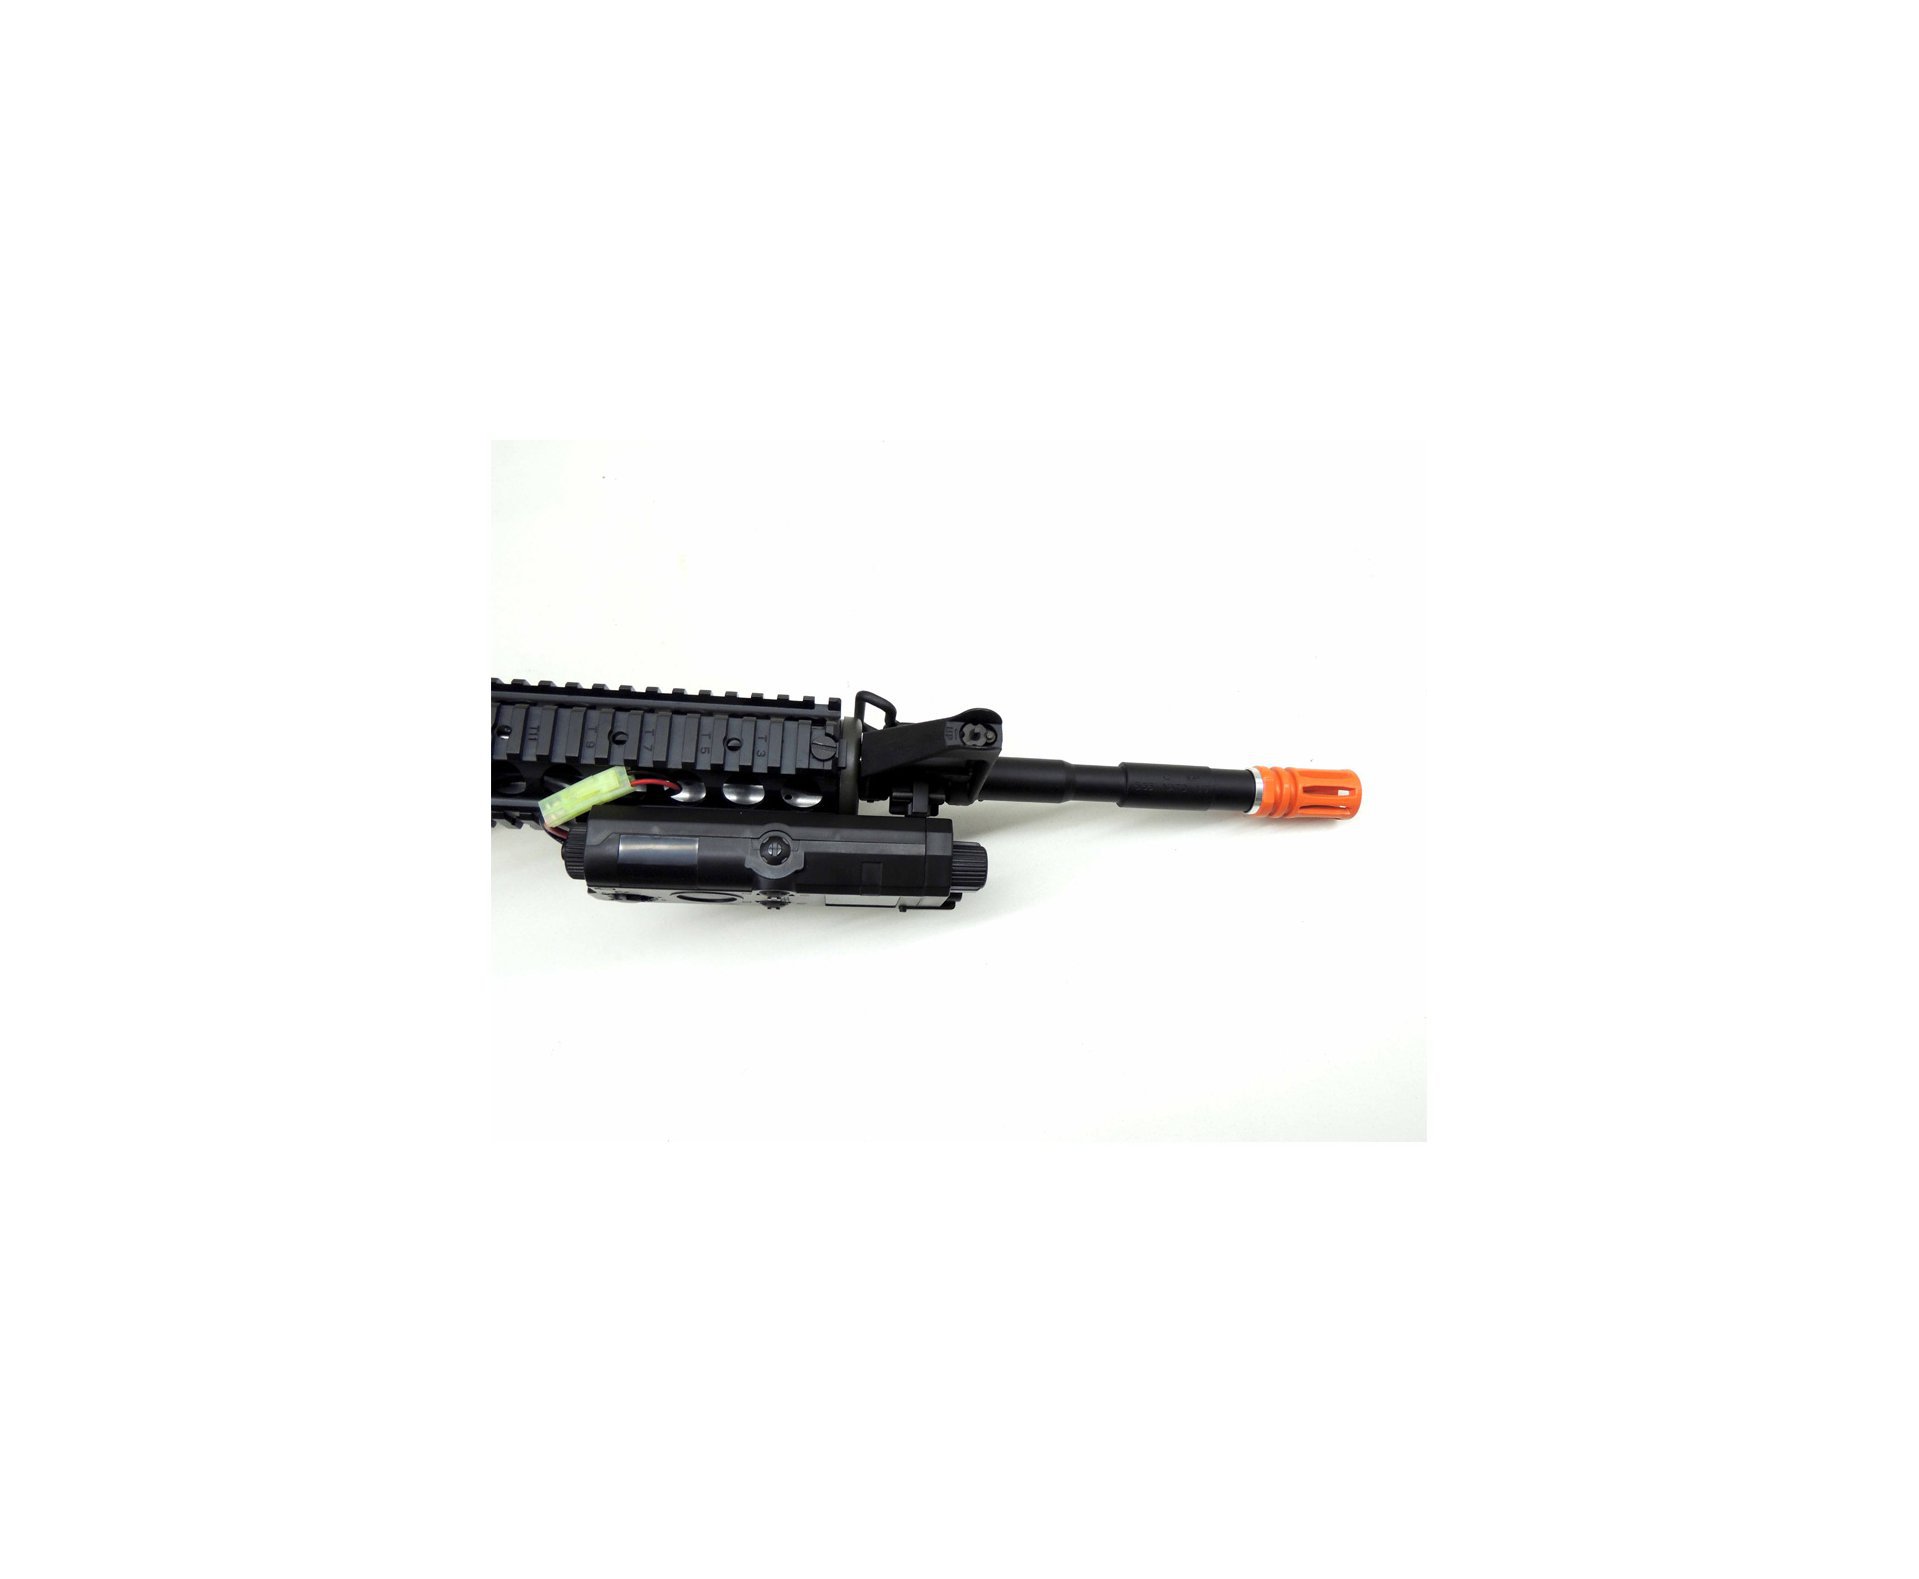 Rifle De Airsoft Colt M4a1ris Cal 6,0 Mm - King Arms + Farda Acu Digital Urban Swiss+arms - Tamanho P